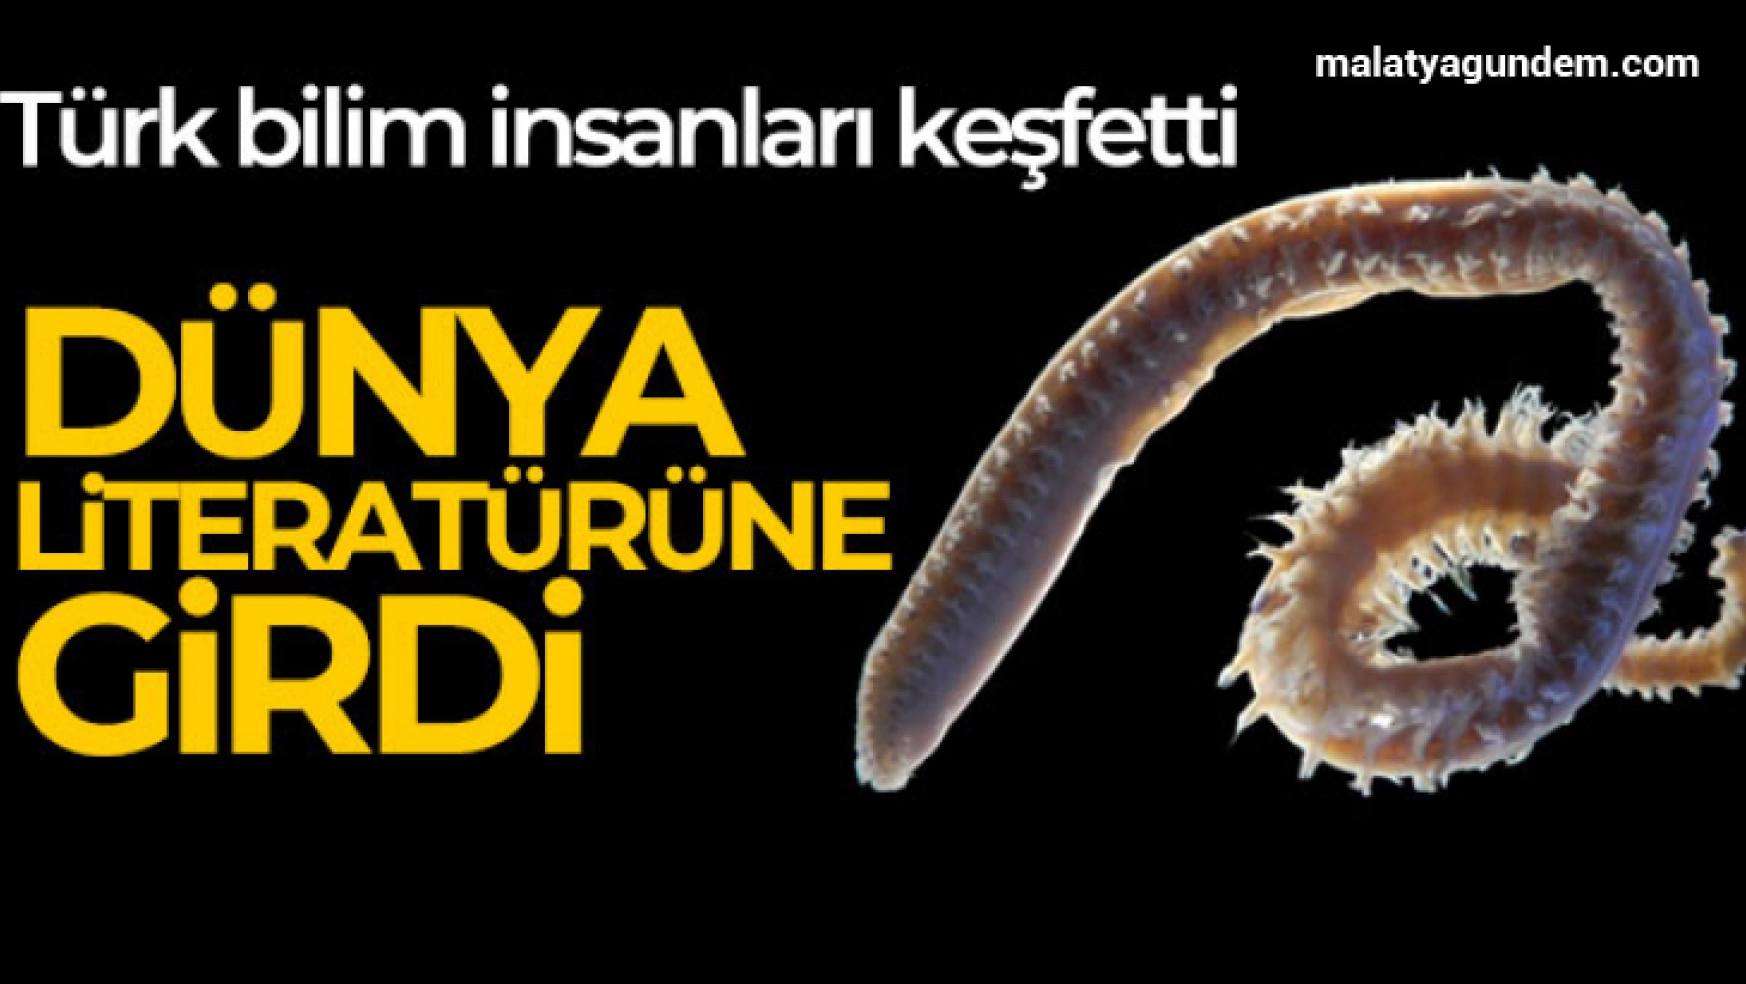 Türk bilim insanları 2 yeni deniz canlısı keşfetti: Dünya literatürüne girdi